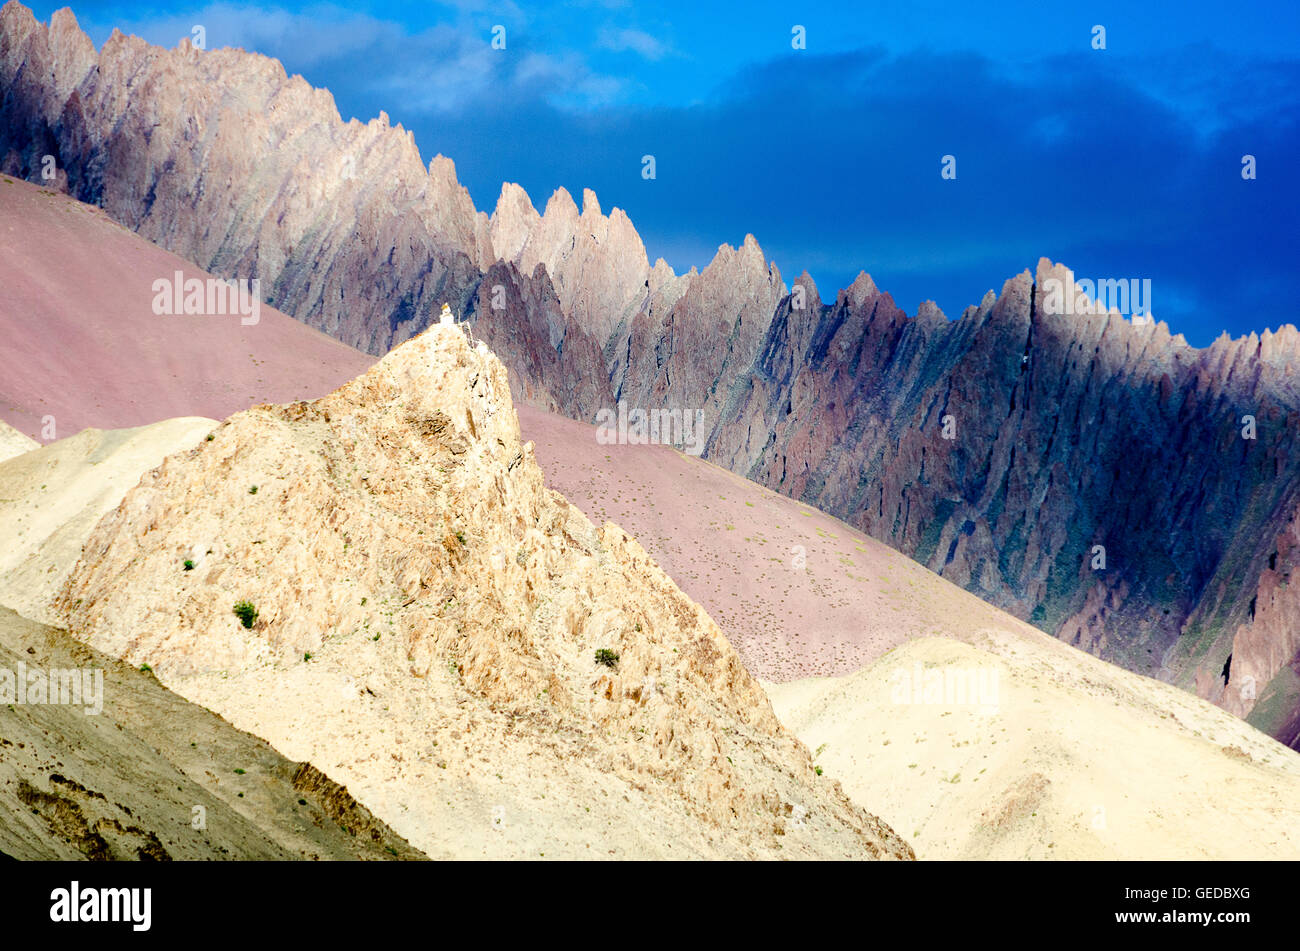 Light and shade on coloured mountain ridges, Rumback,  Ladakh, Jammu and Kashmir, India Stock Photo